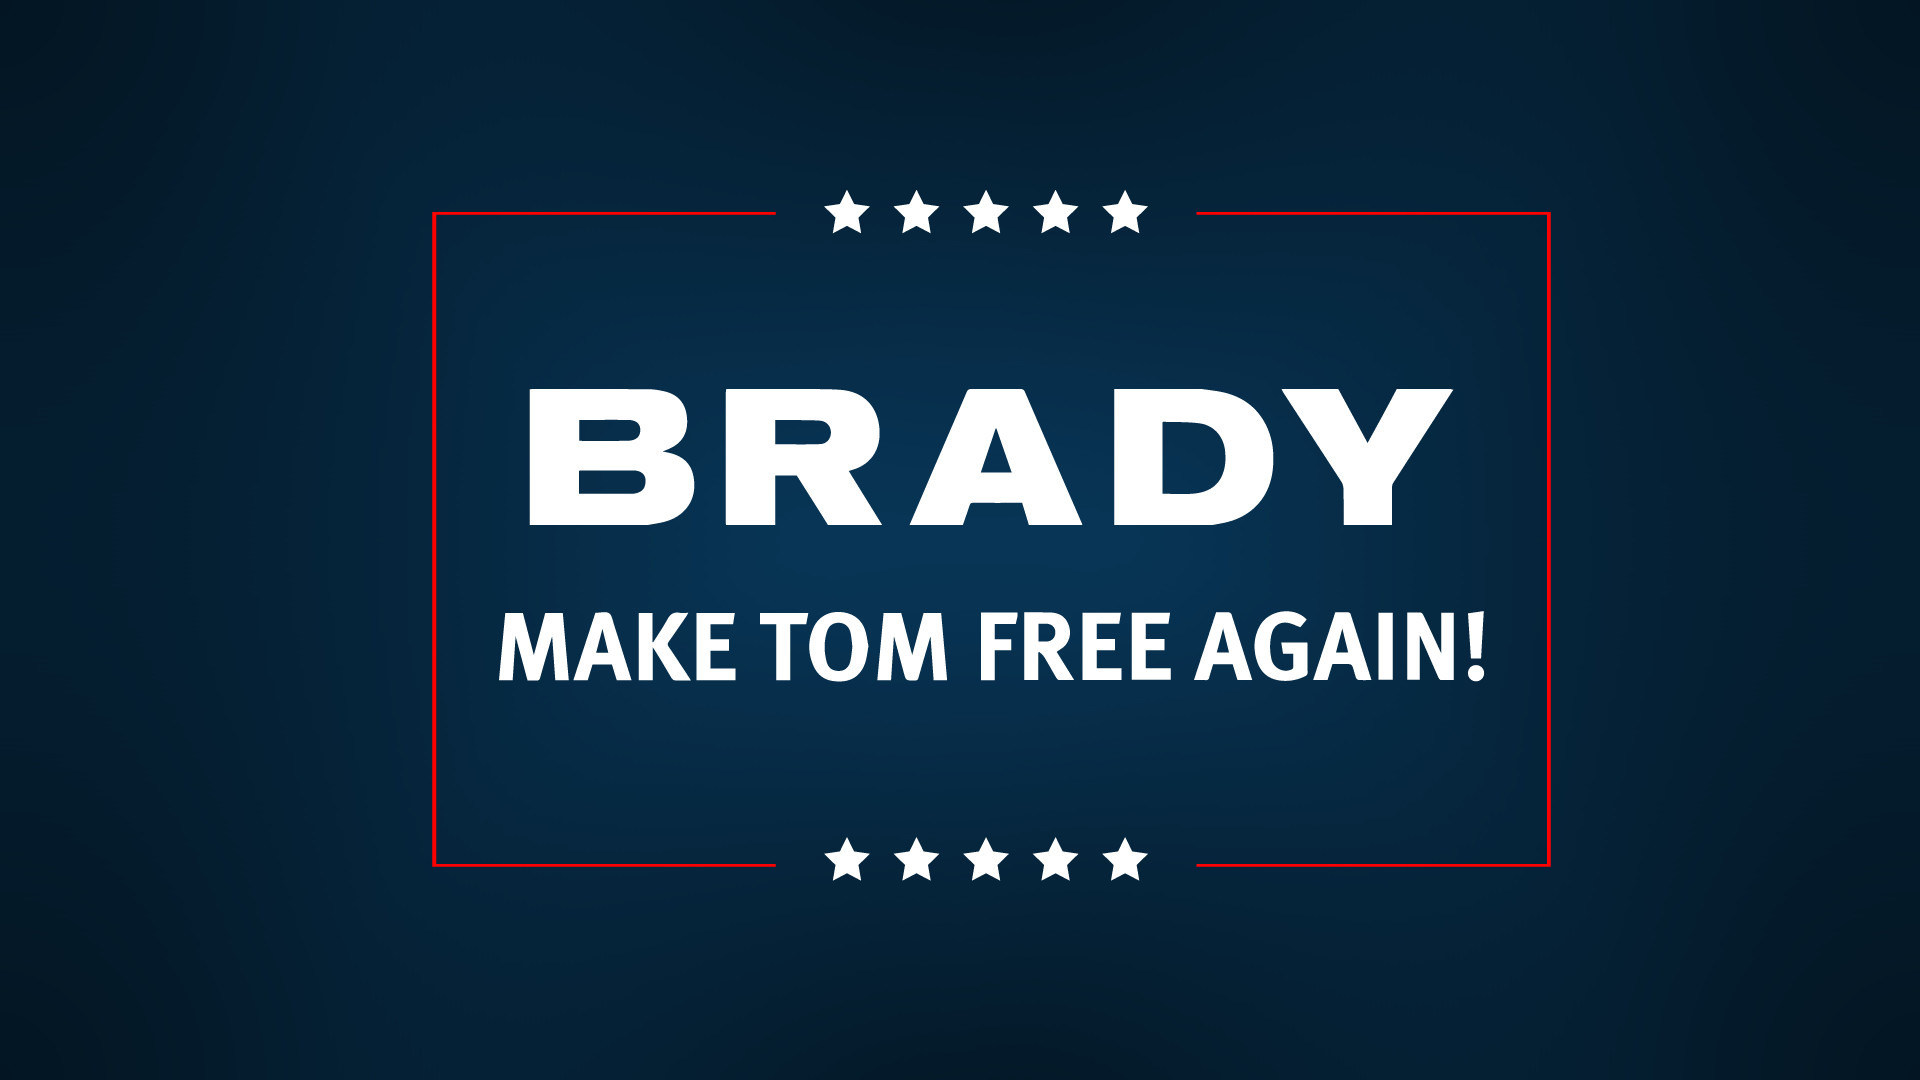 1920x1080 (OC) Make Tom Brady Free Again wallpaper.